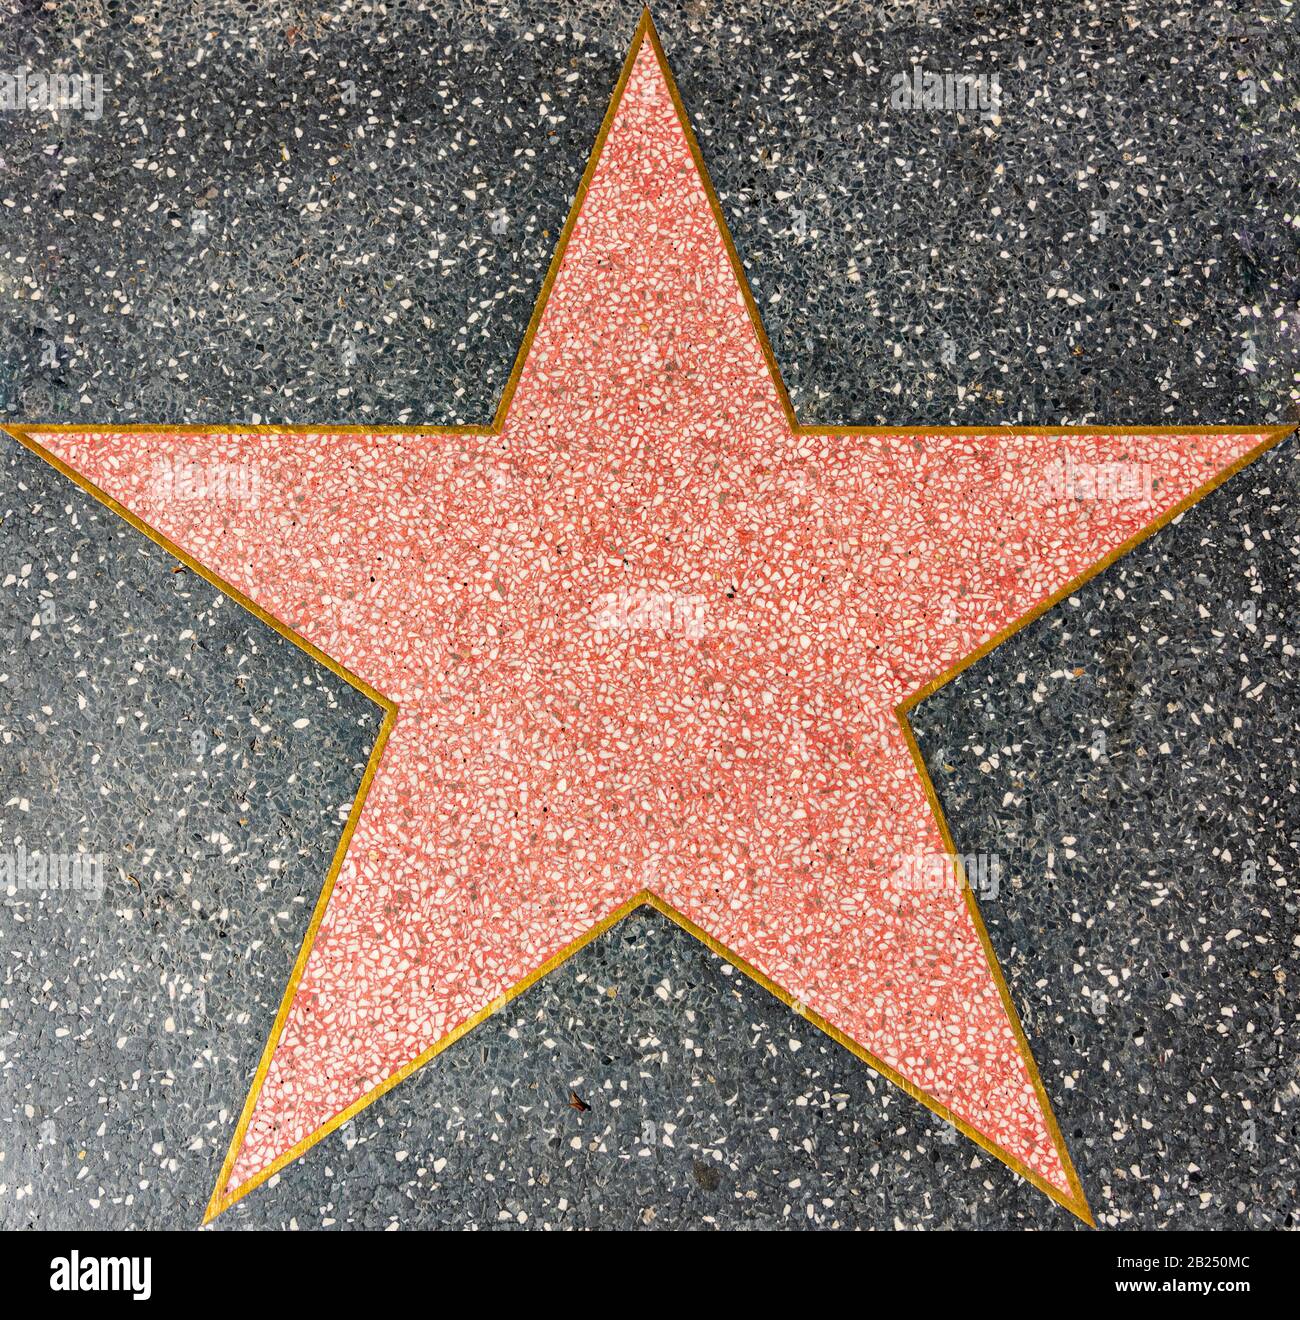 Los Angeles, Kalifornien - 8. Februar 2019: Ein leerer Stern auf dem Walk of Fame Bürgersteig in Hollywood. Stockfoto